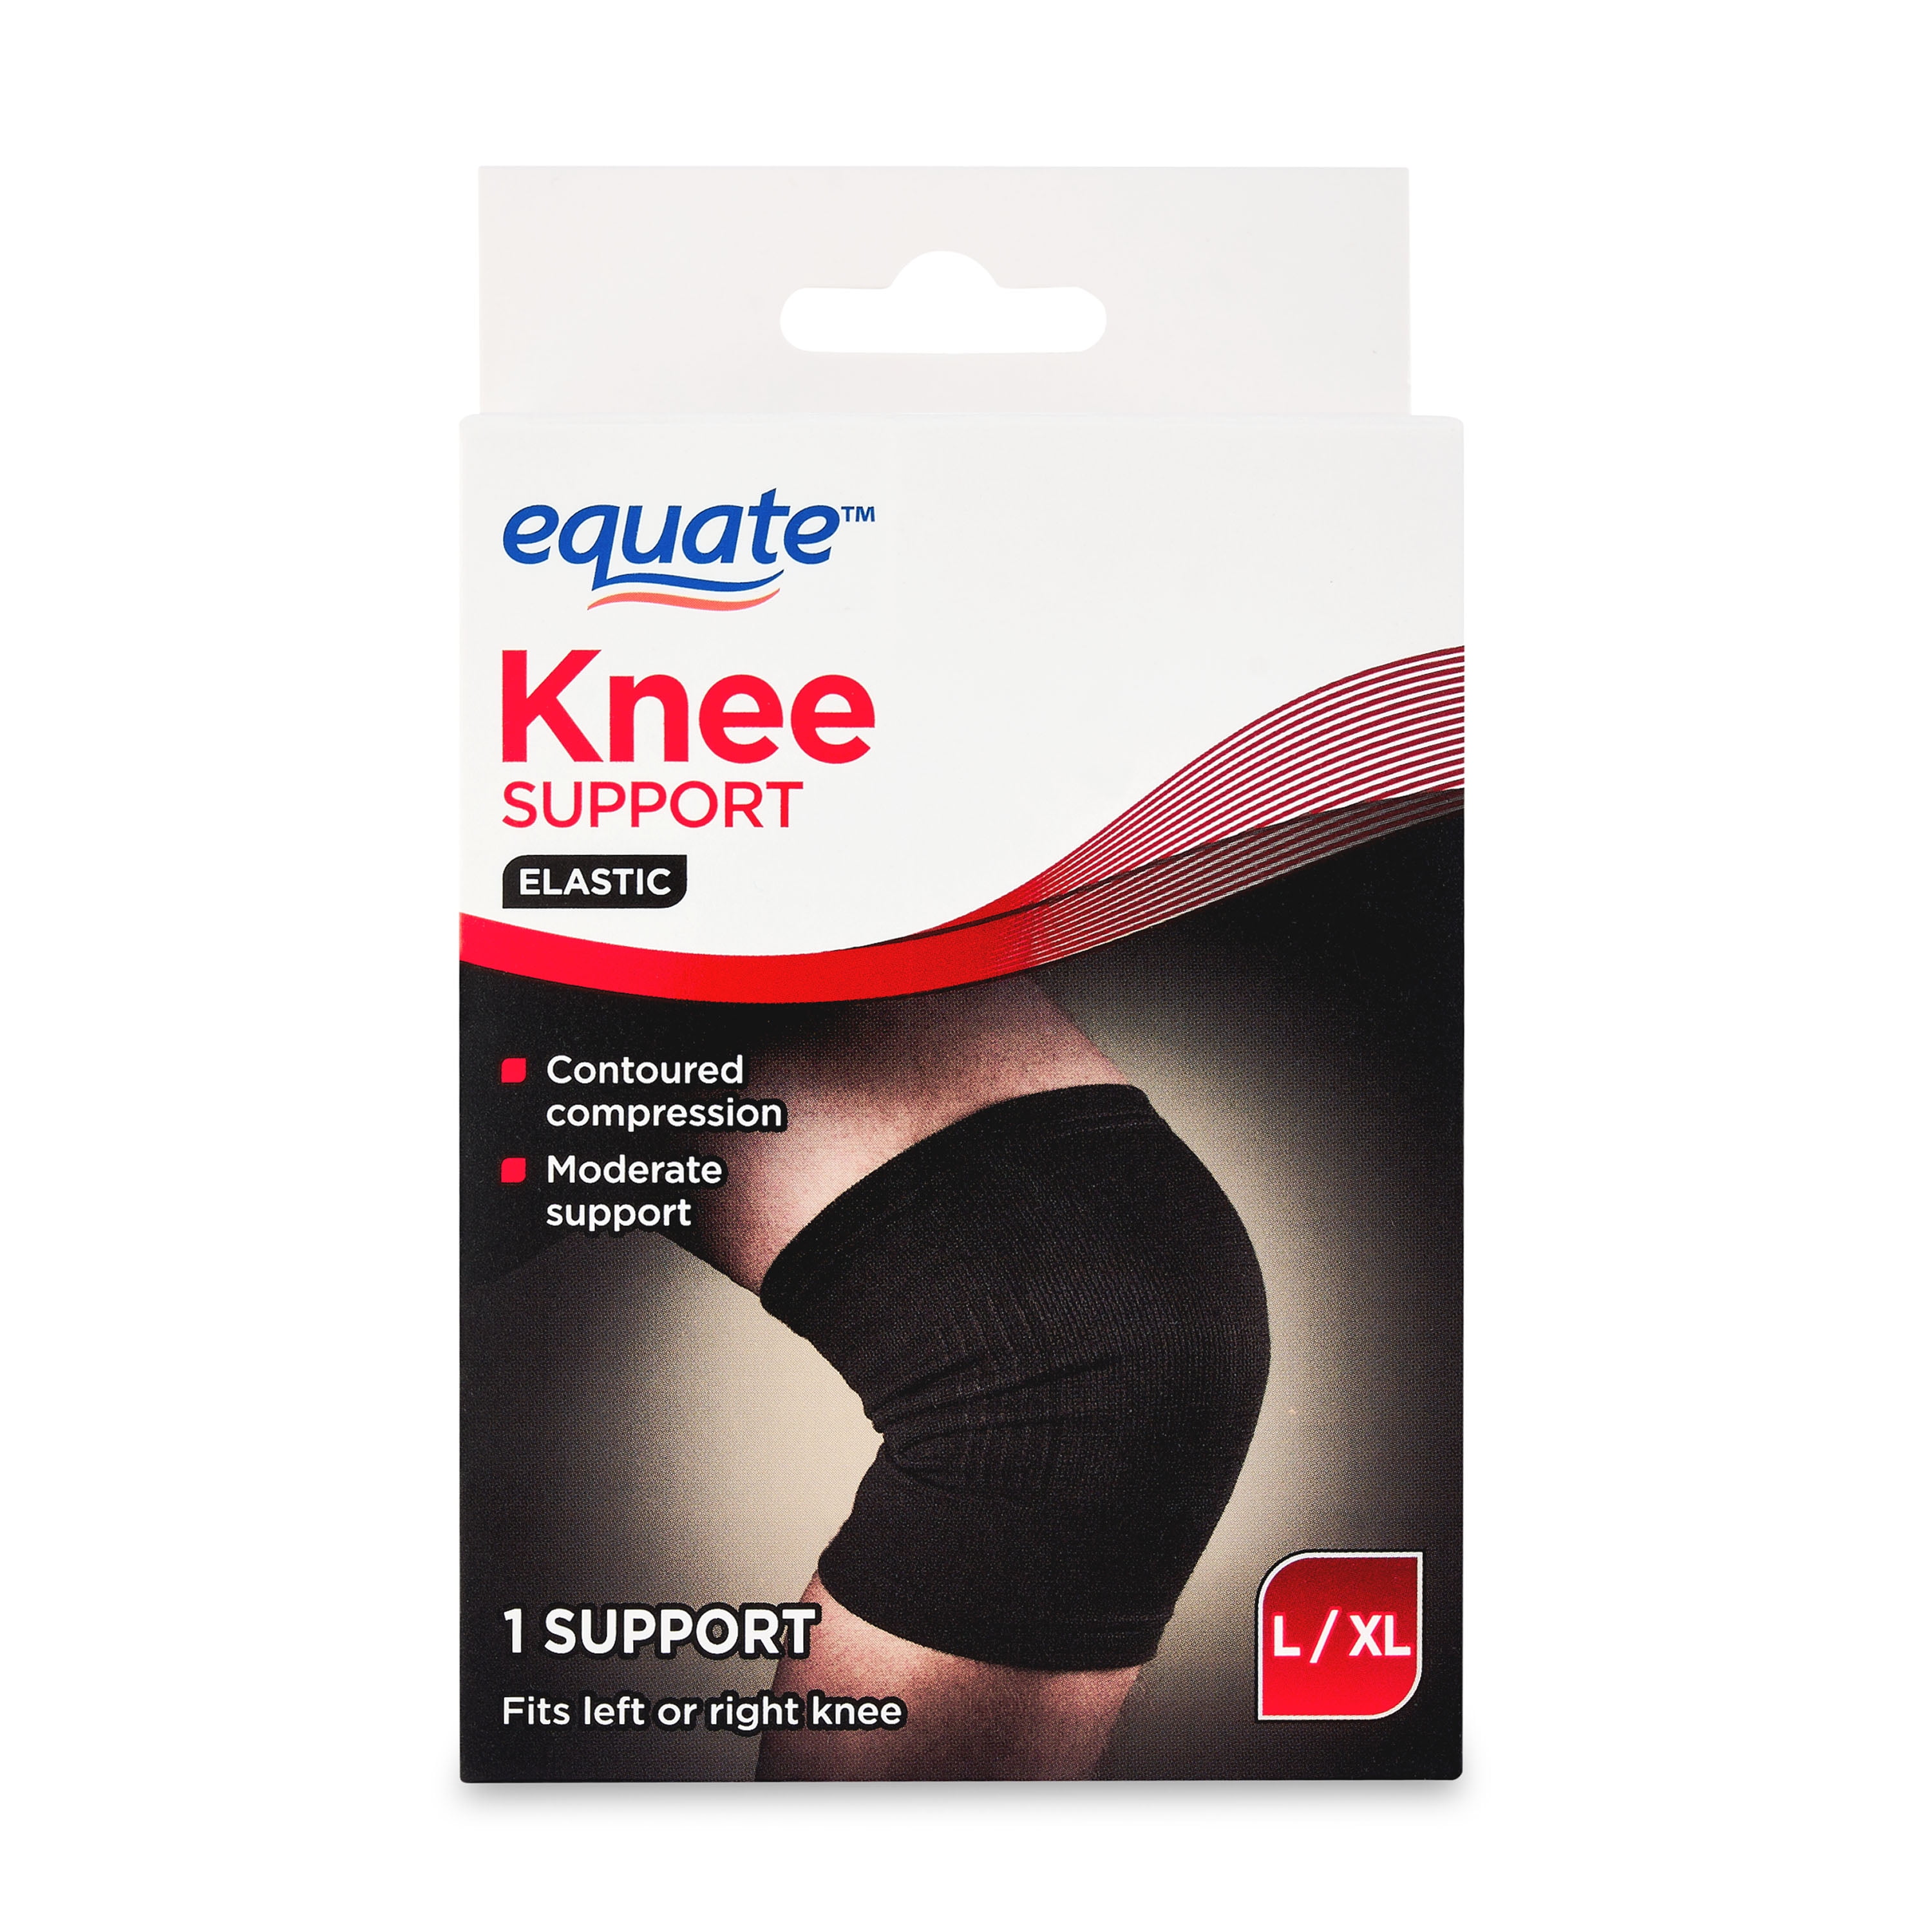 Equate Elastic Knee Support, L/XL